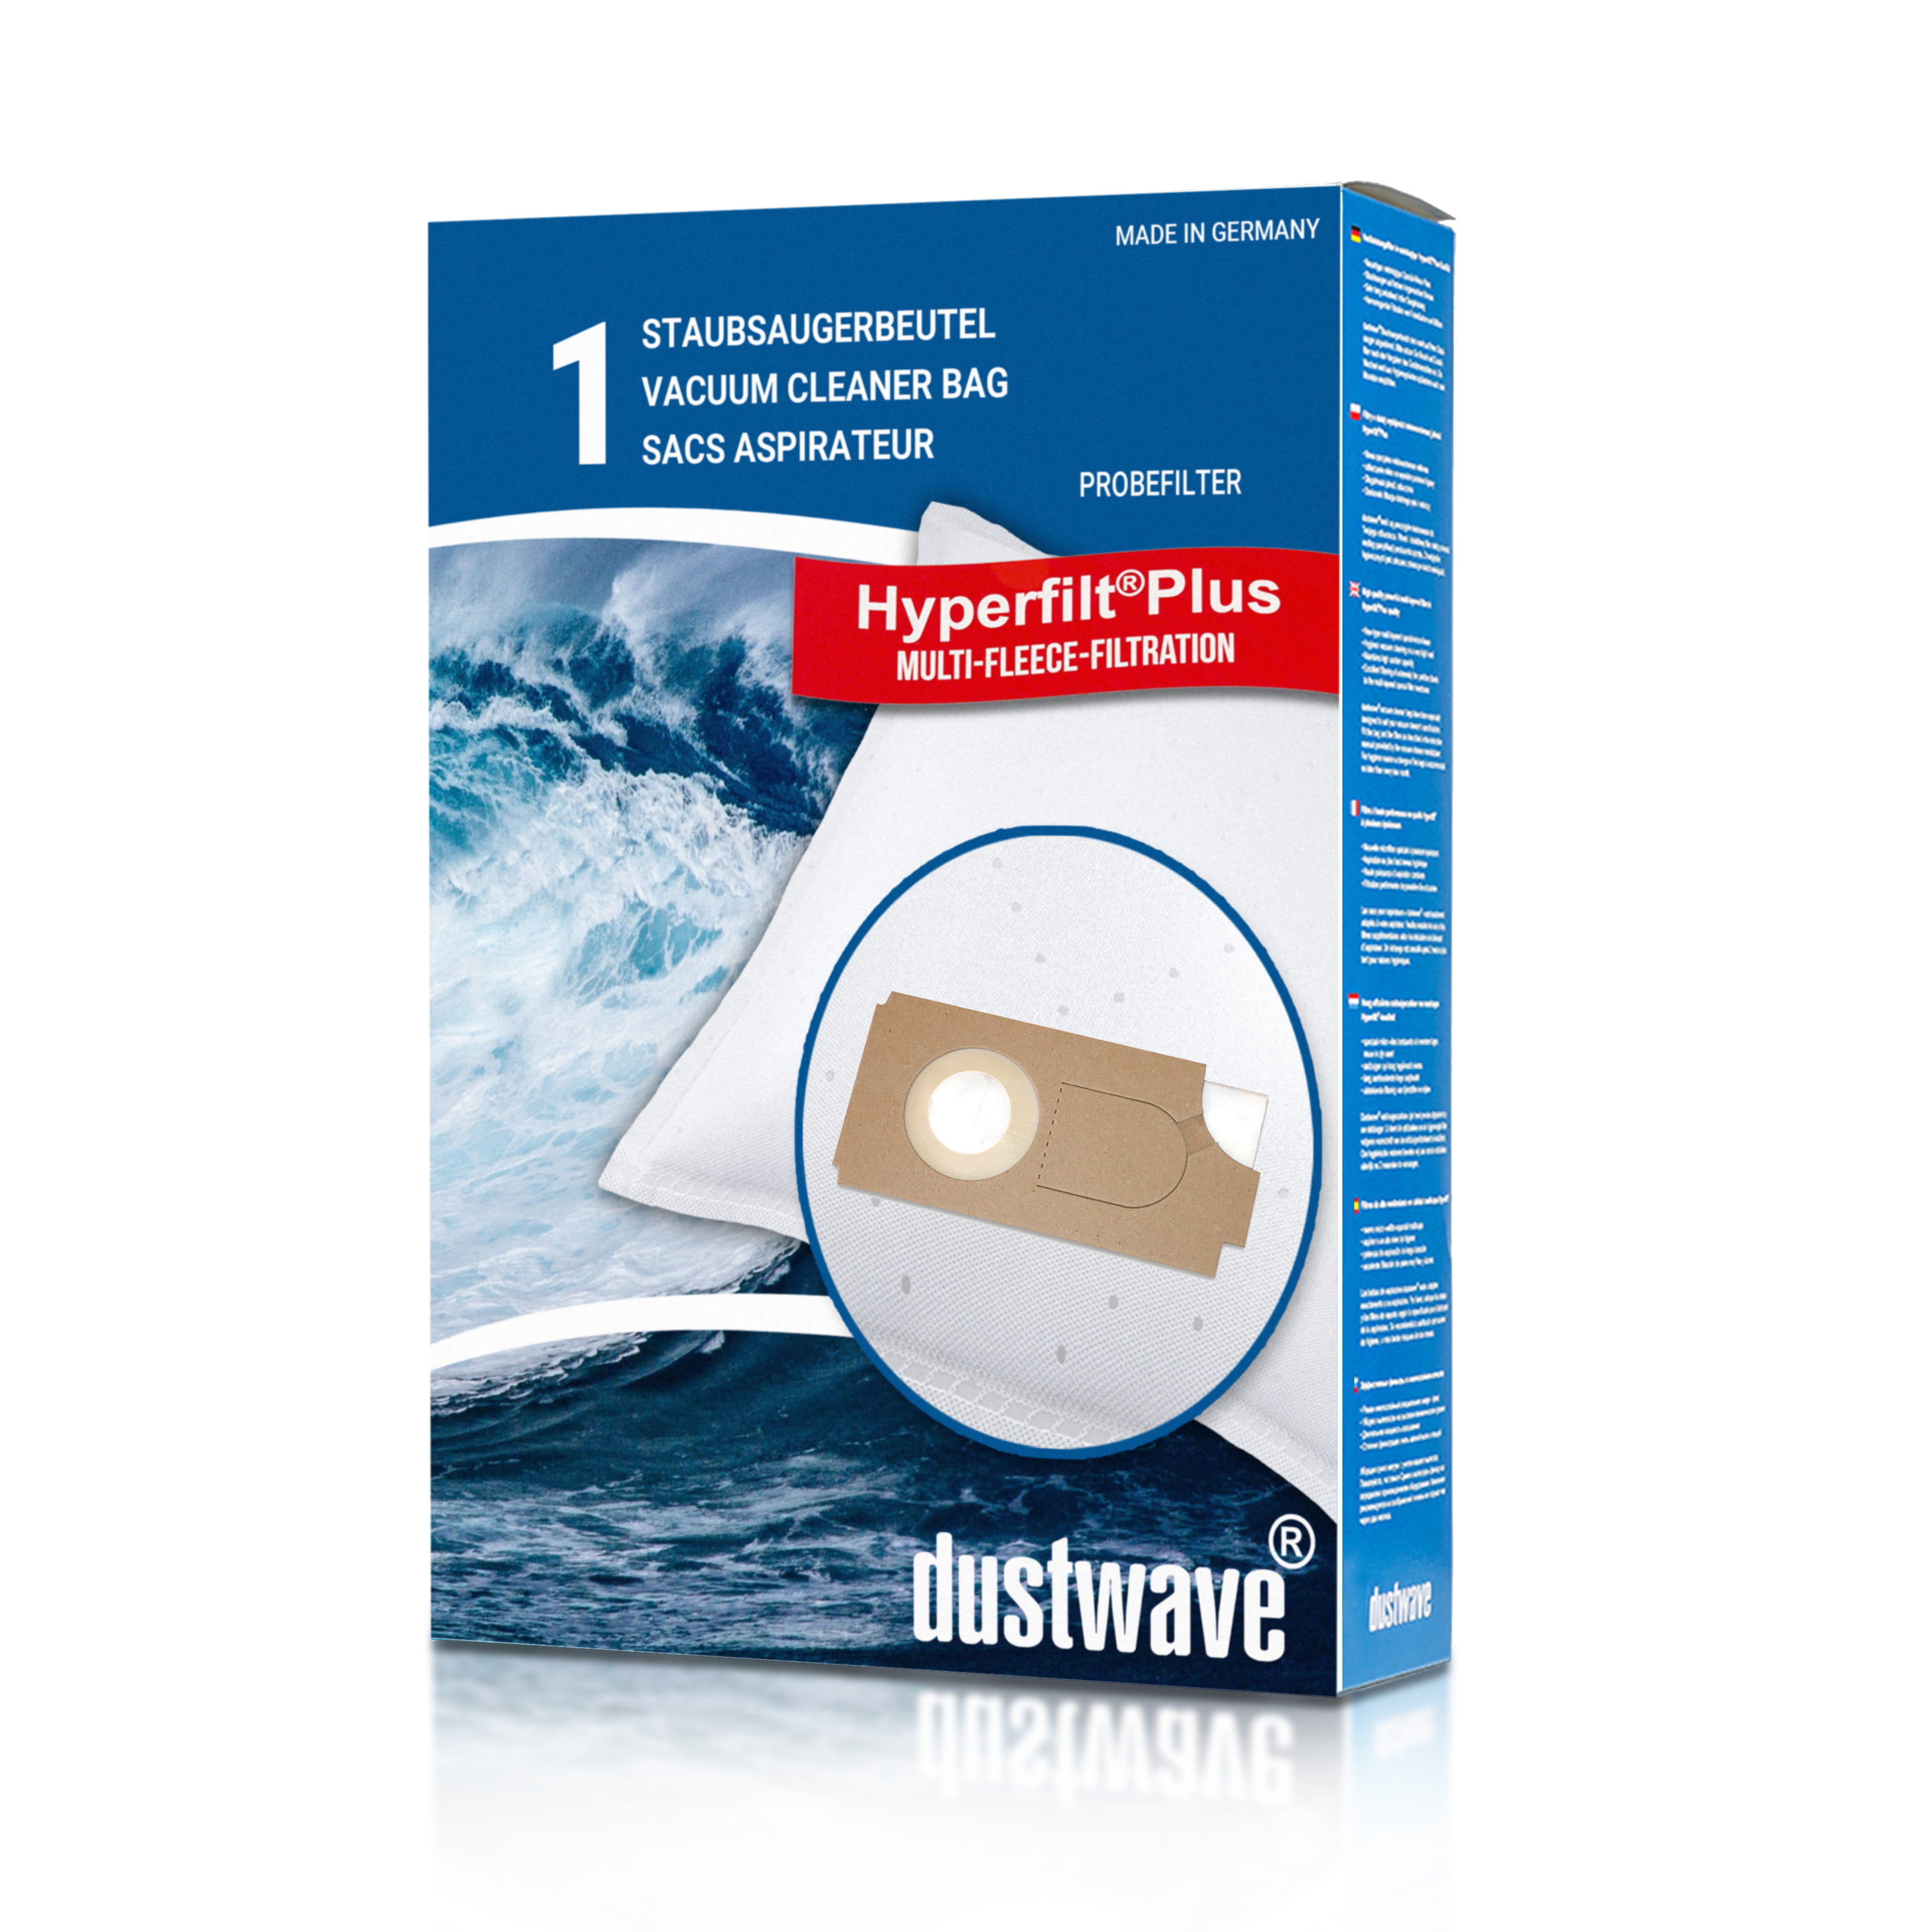 Dustwave® 1 Staubsaugerbeutel für Columbus 202 084 30 / 20208430 - hocheffizient mit Hygieneverschluss - Made in Germany